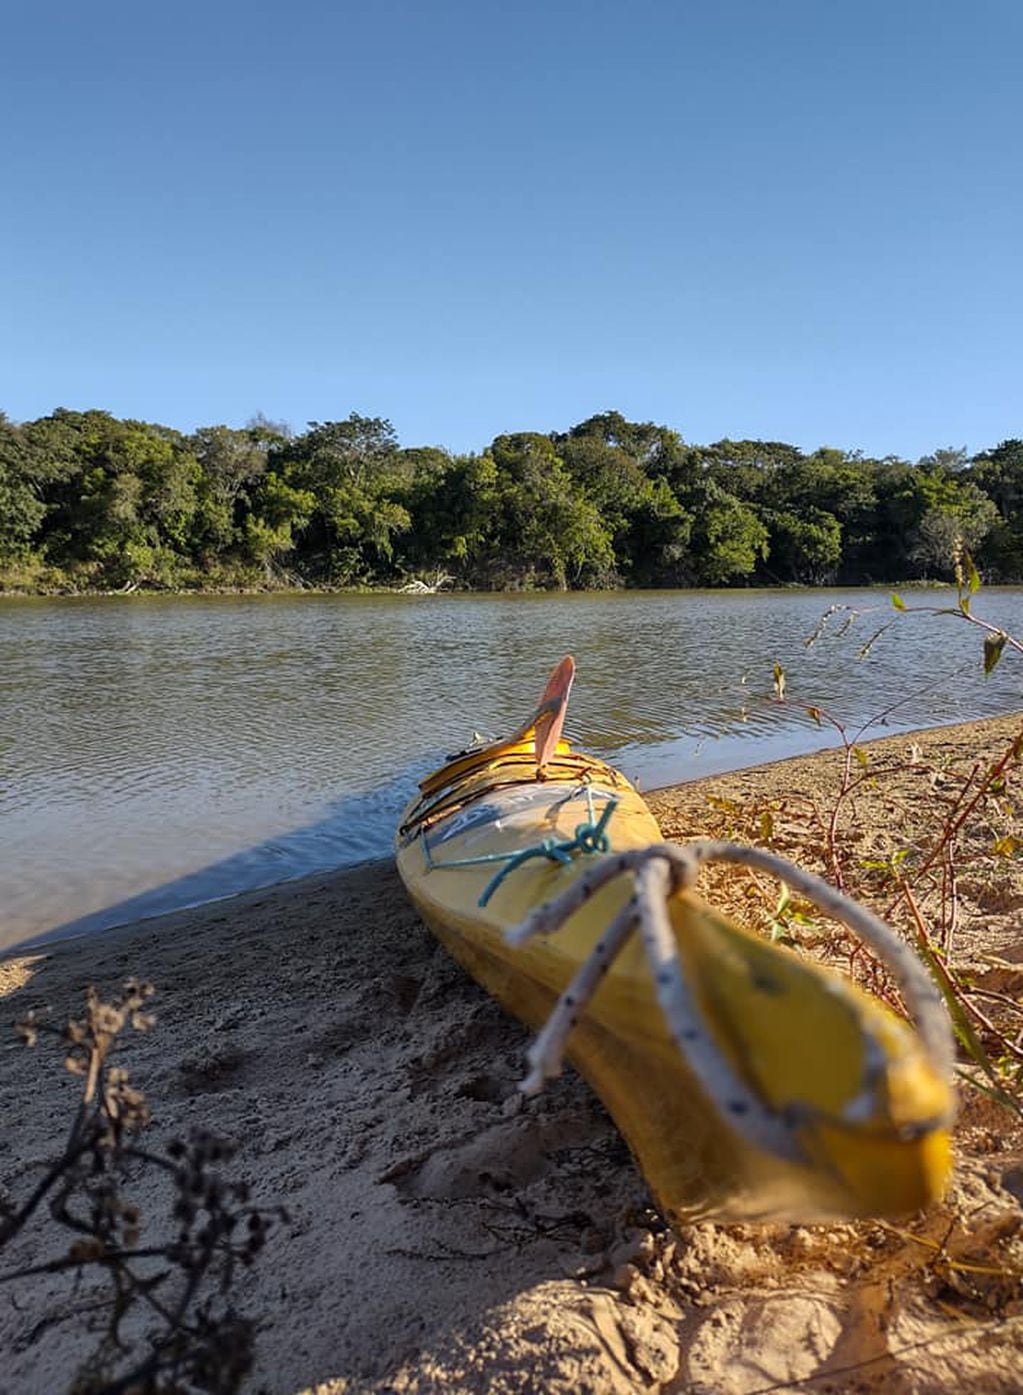 Una travesía sabatina a puro sol y naturaleza frente a la costas de Corrientes.